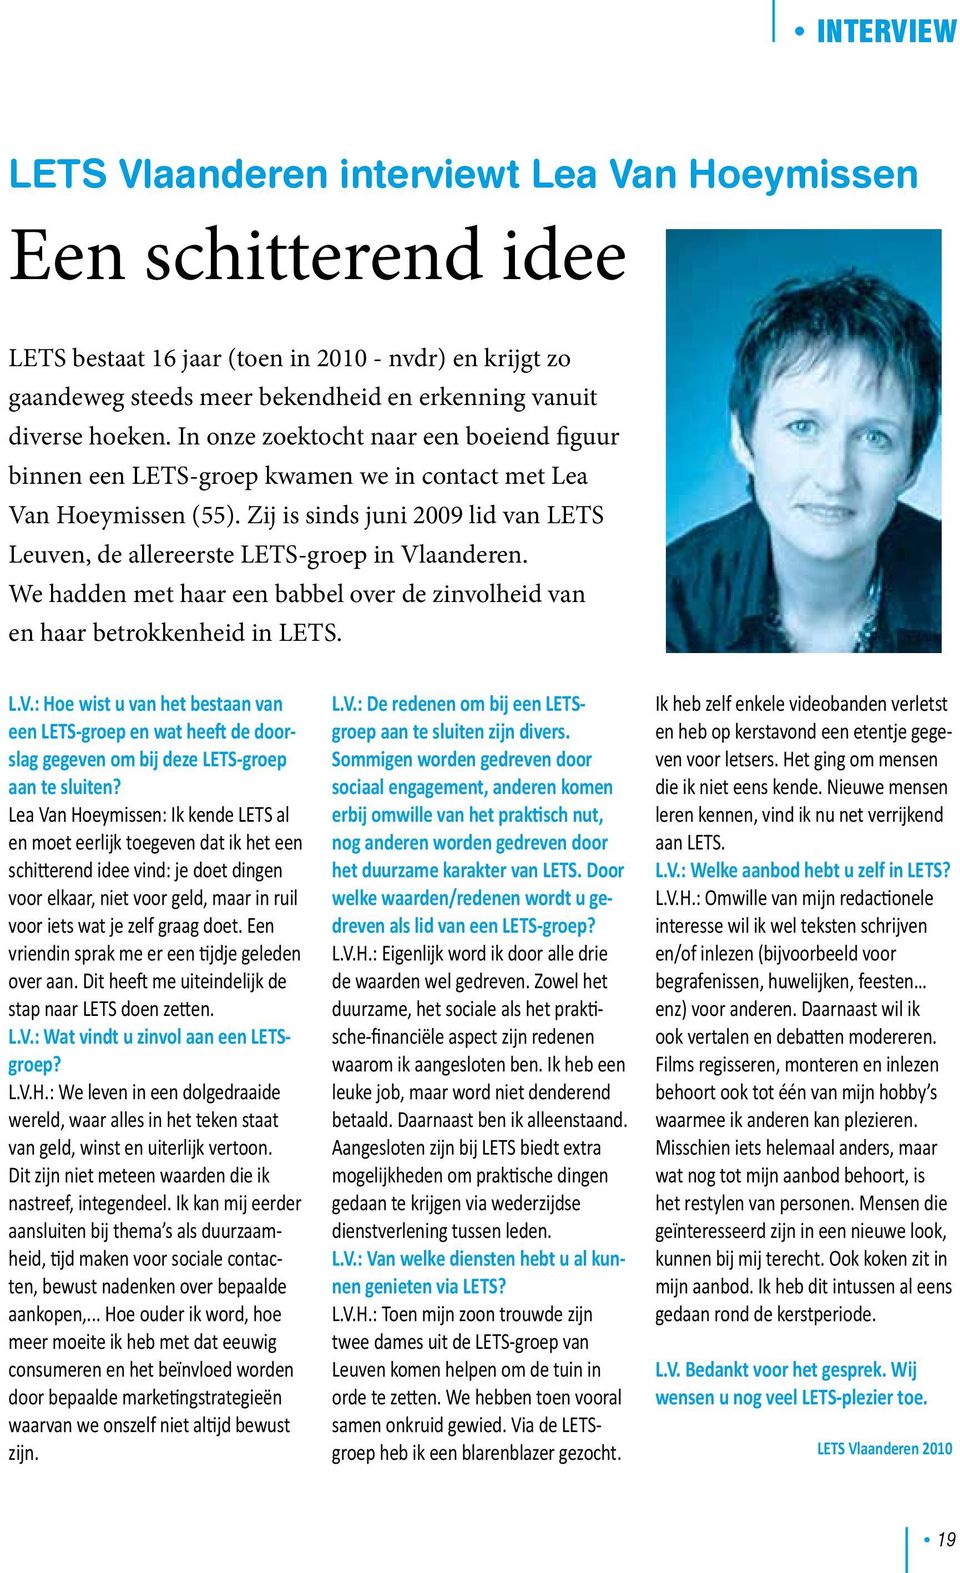 Zij is sinds juni 2009 lid van LETS Leuven, de allereerste LETS-groep in Vlaanderen. We hadden met haar een babbel over de zinvolheid van en haar betrokkenheid in LETS. L.V.: Hoe wist u van het bestaan van een LETS-groep en wat heeft de doorslag gegeven om bij deze LETS-groep aan te sluiten?